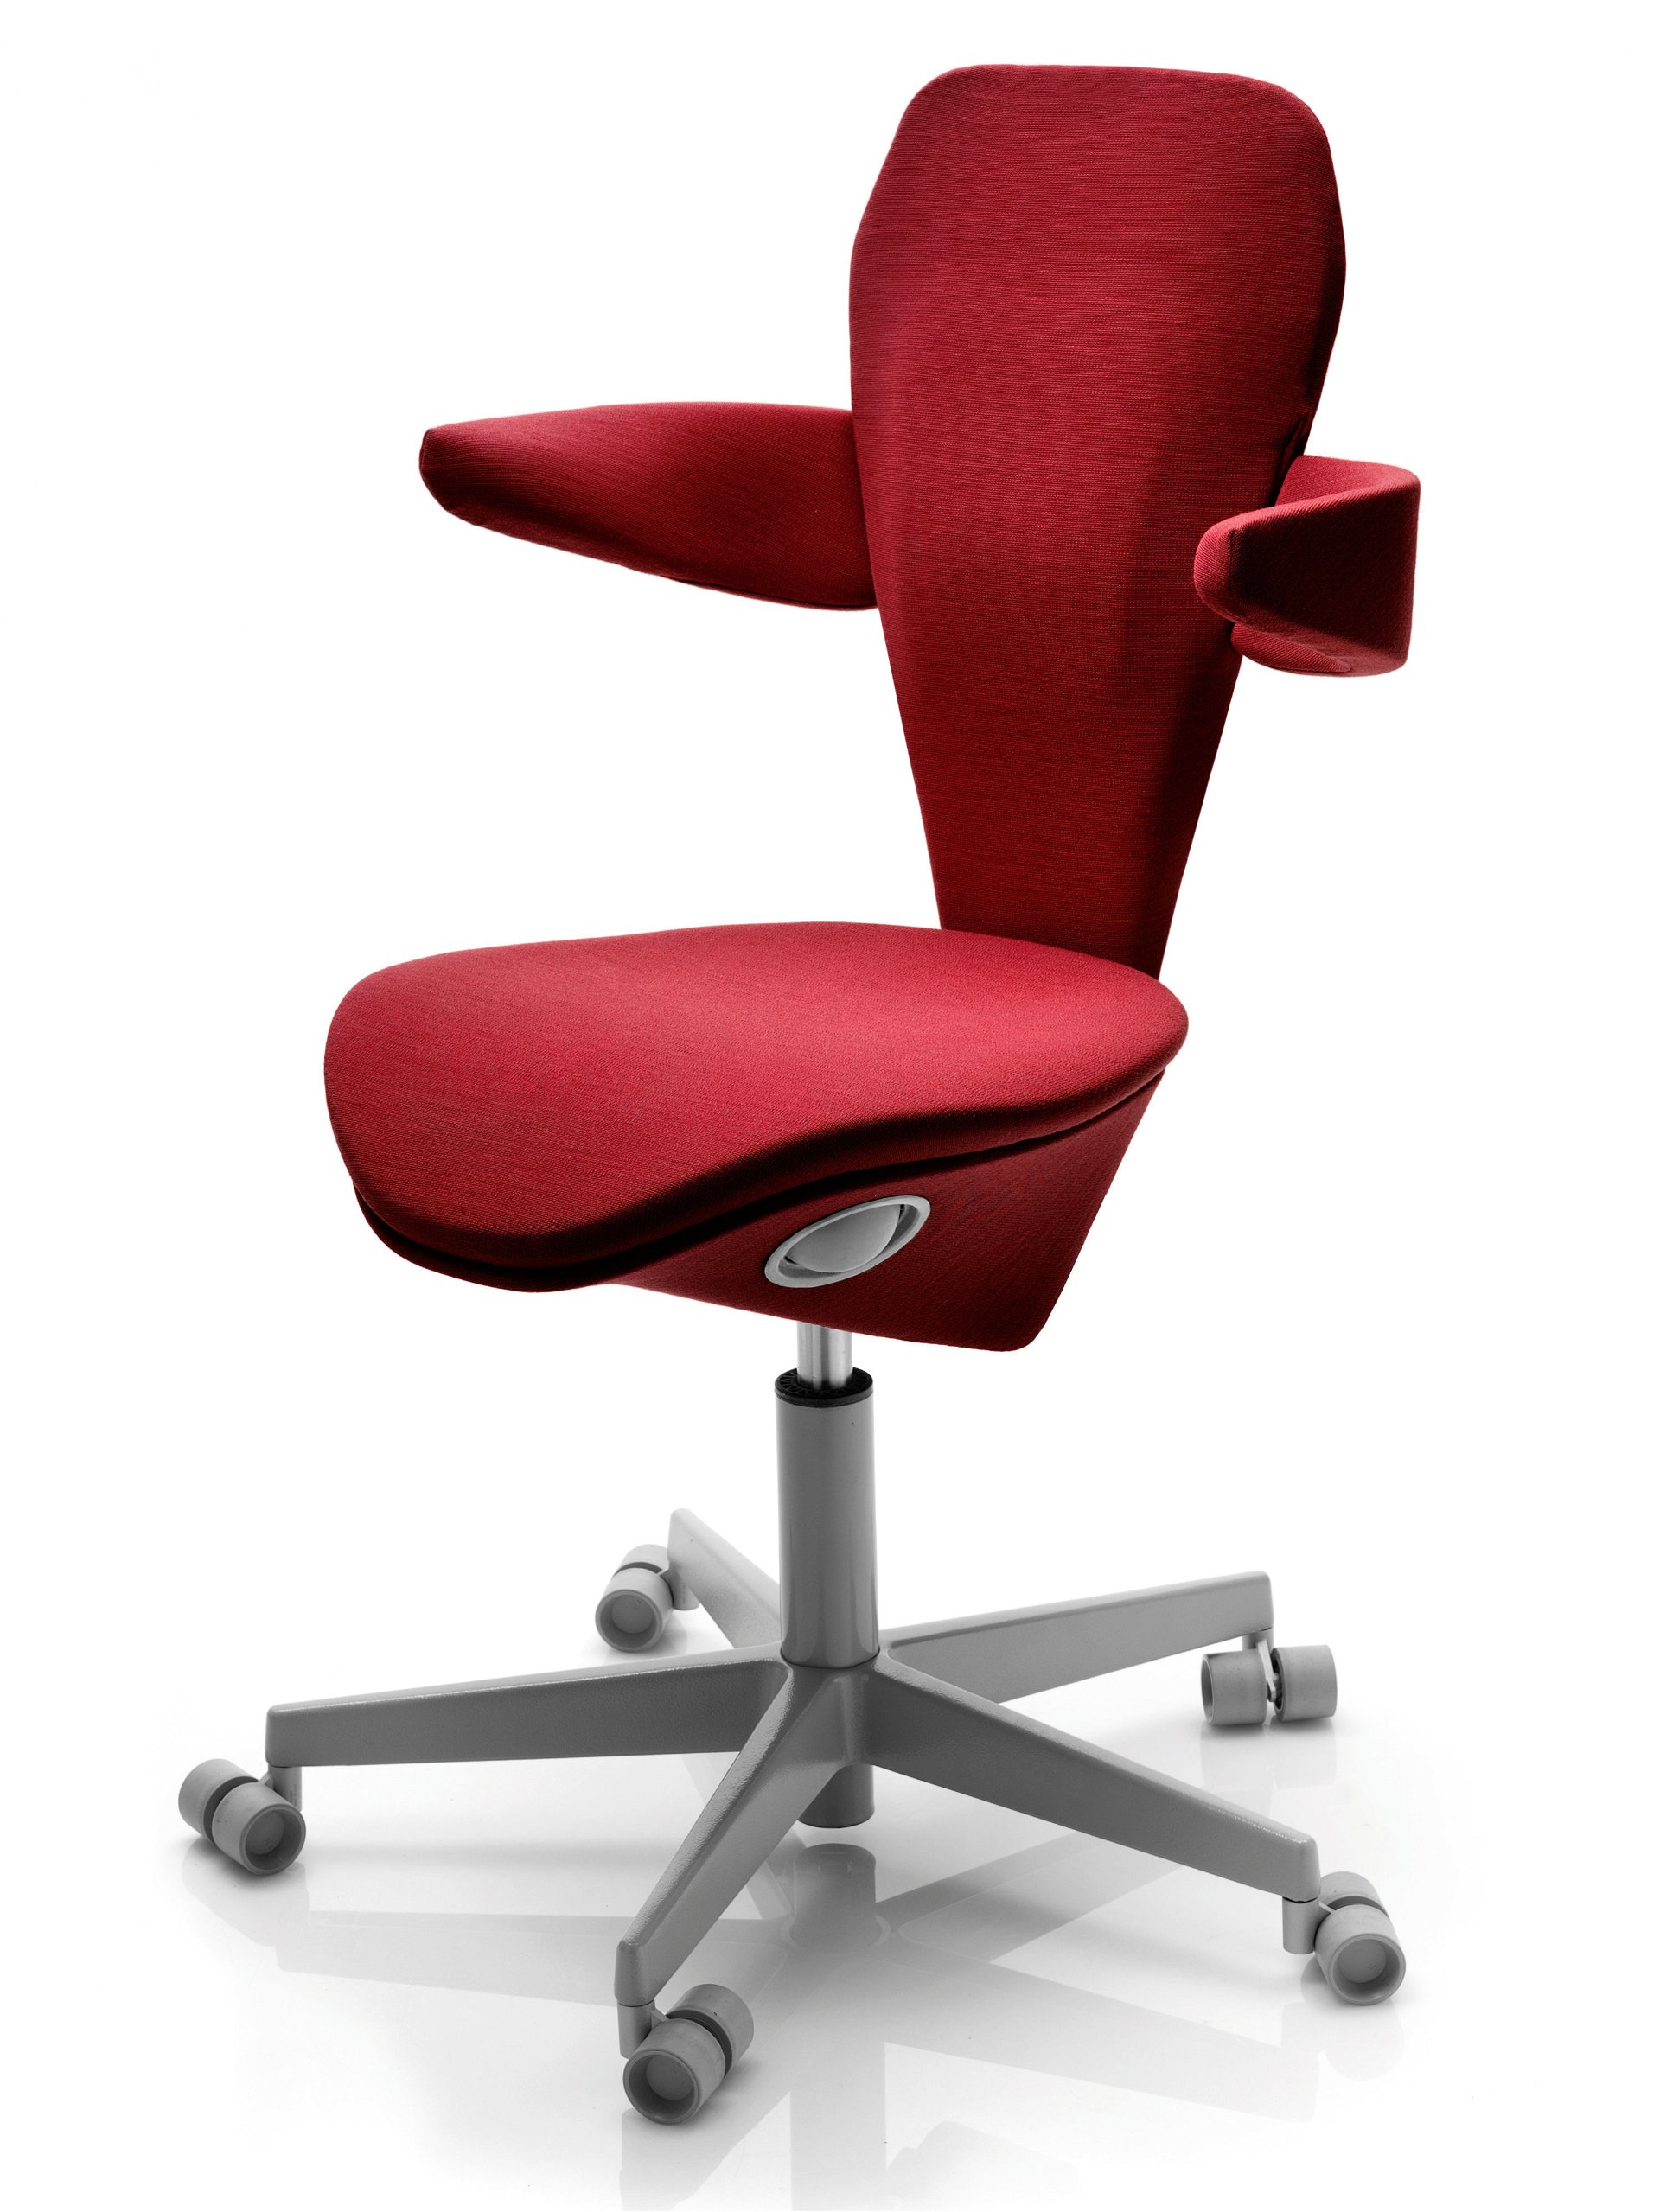 Eigentlich sei Design für sie neutral, betont Monica Förster. Aber es habe sie geärgert, dass viele Bürostühle extrem groß und klobig seien. Ihr weiblicher Stuhl »Lei« basiert auf ergonomischen Studien, wie Frauenkörper gebaut sind. 

